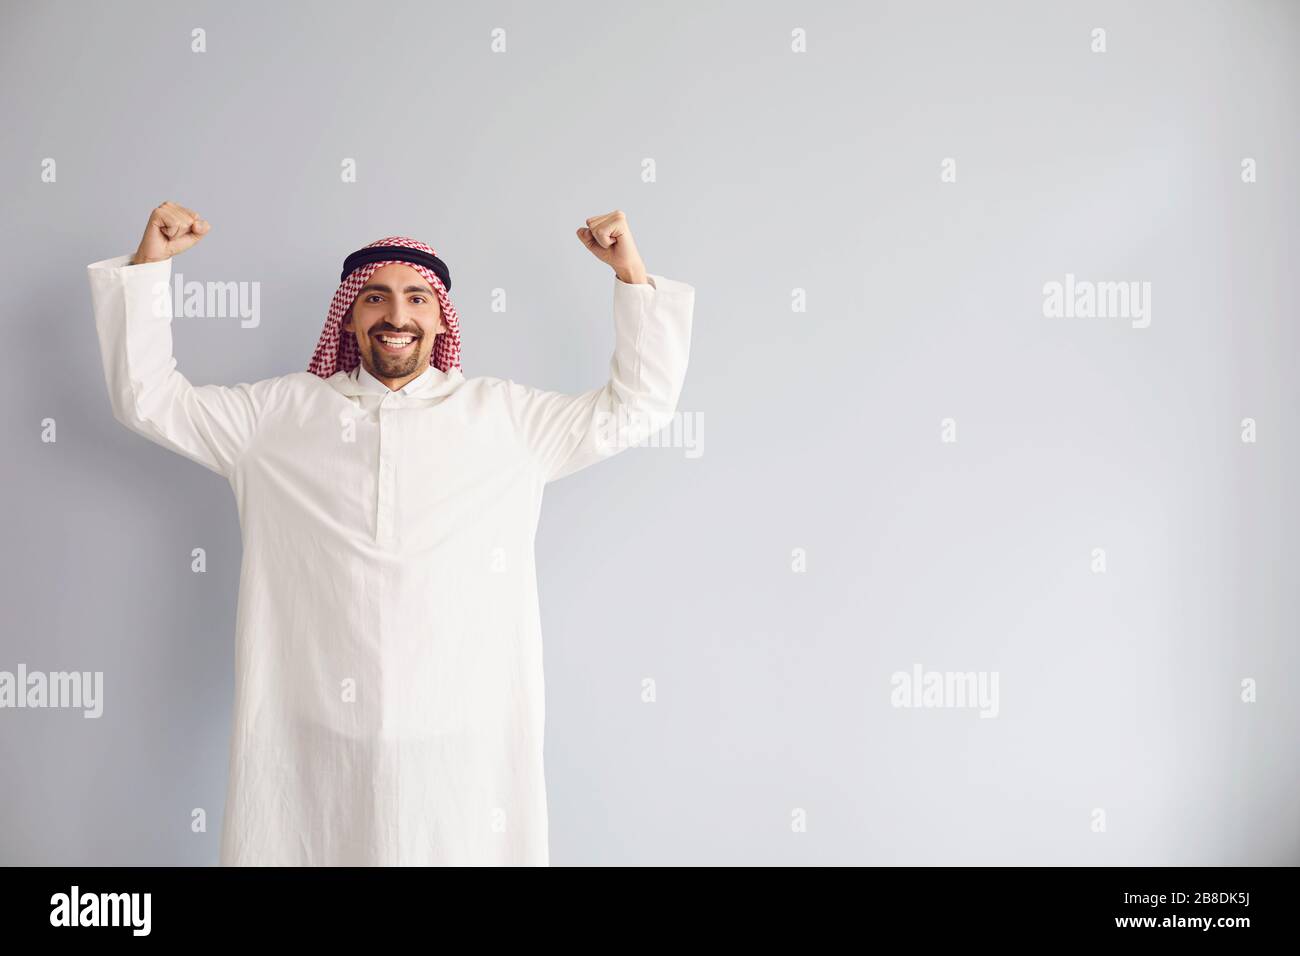 Der arabische männliche Geschäftsmann hob seine Hände lächelnd auf einem grauen Hintergrund Stockfoto